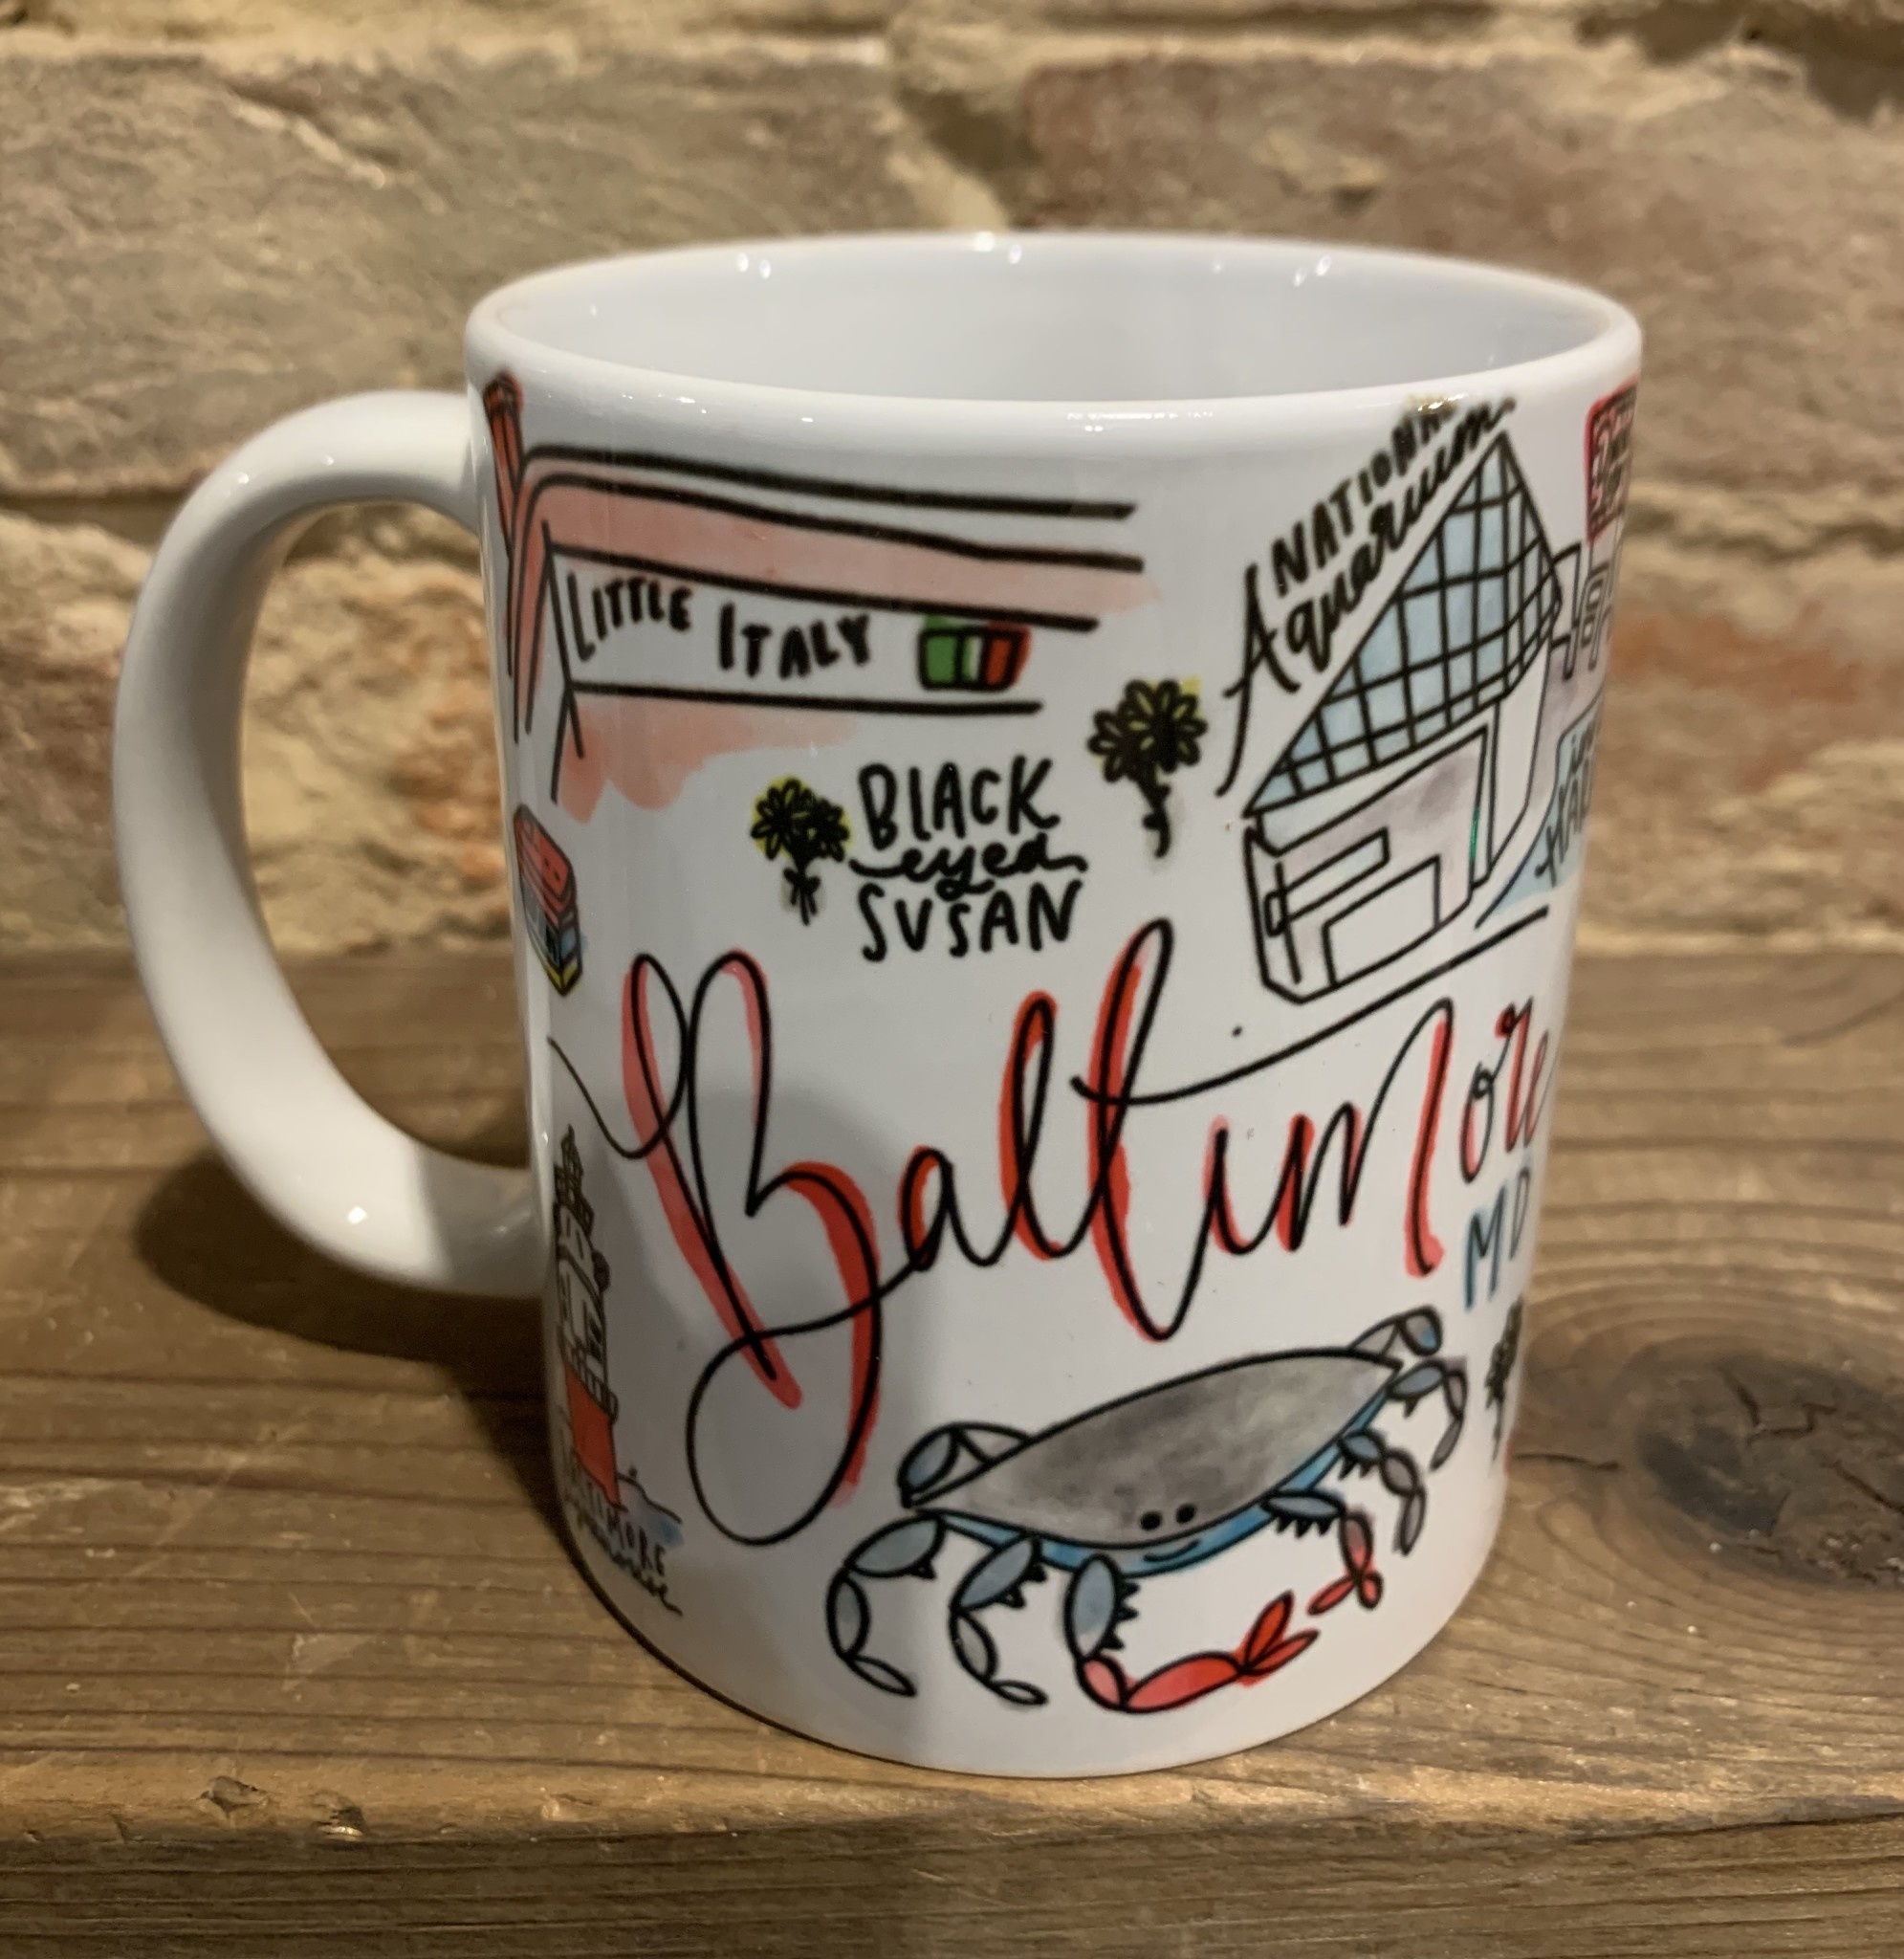 Signet Sealed Baltimore Mug